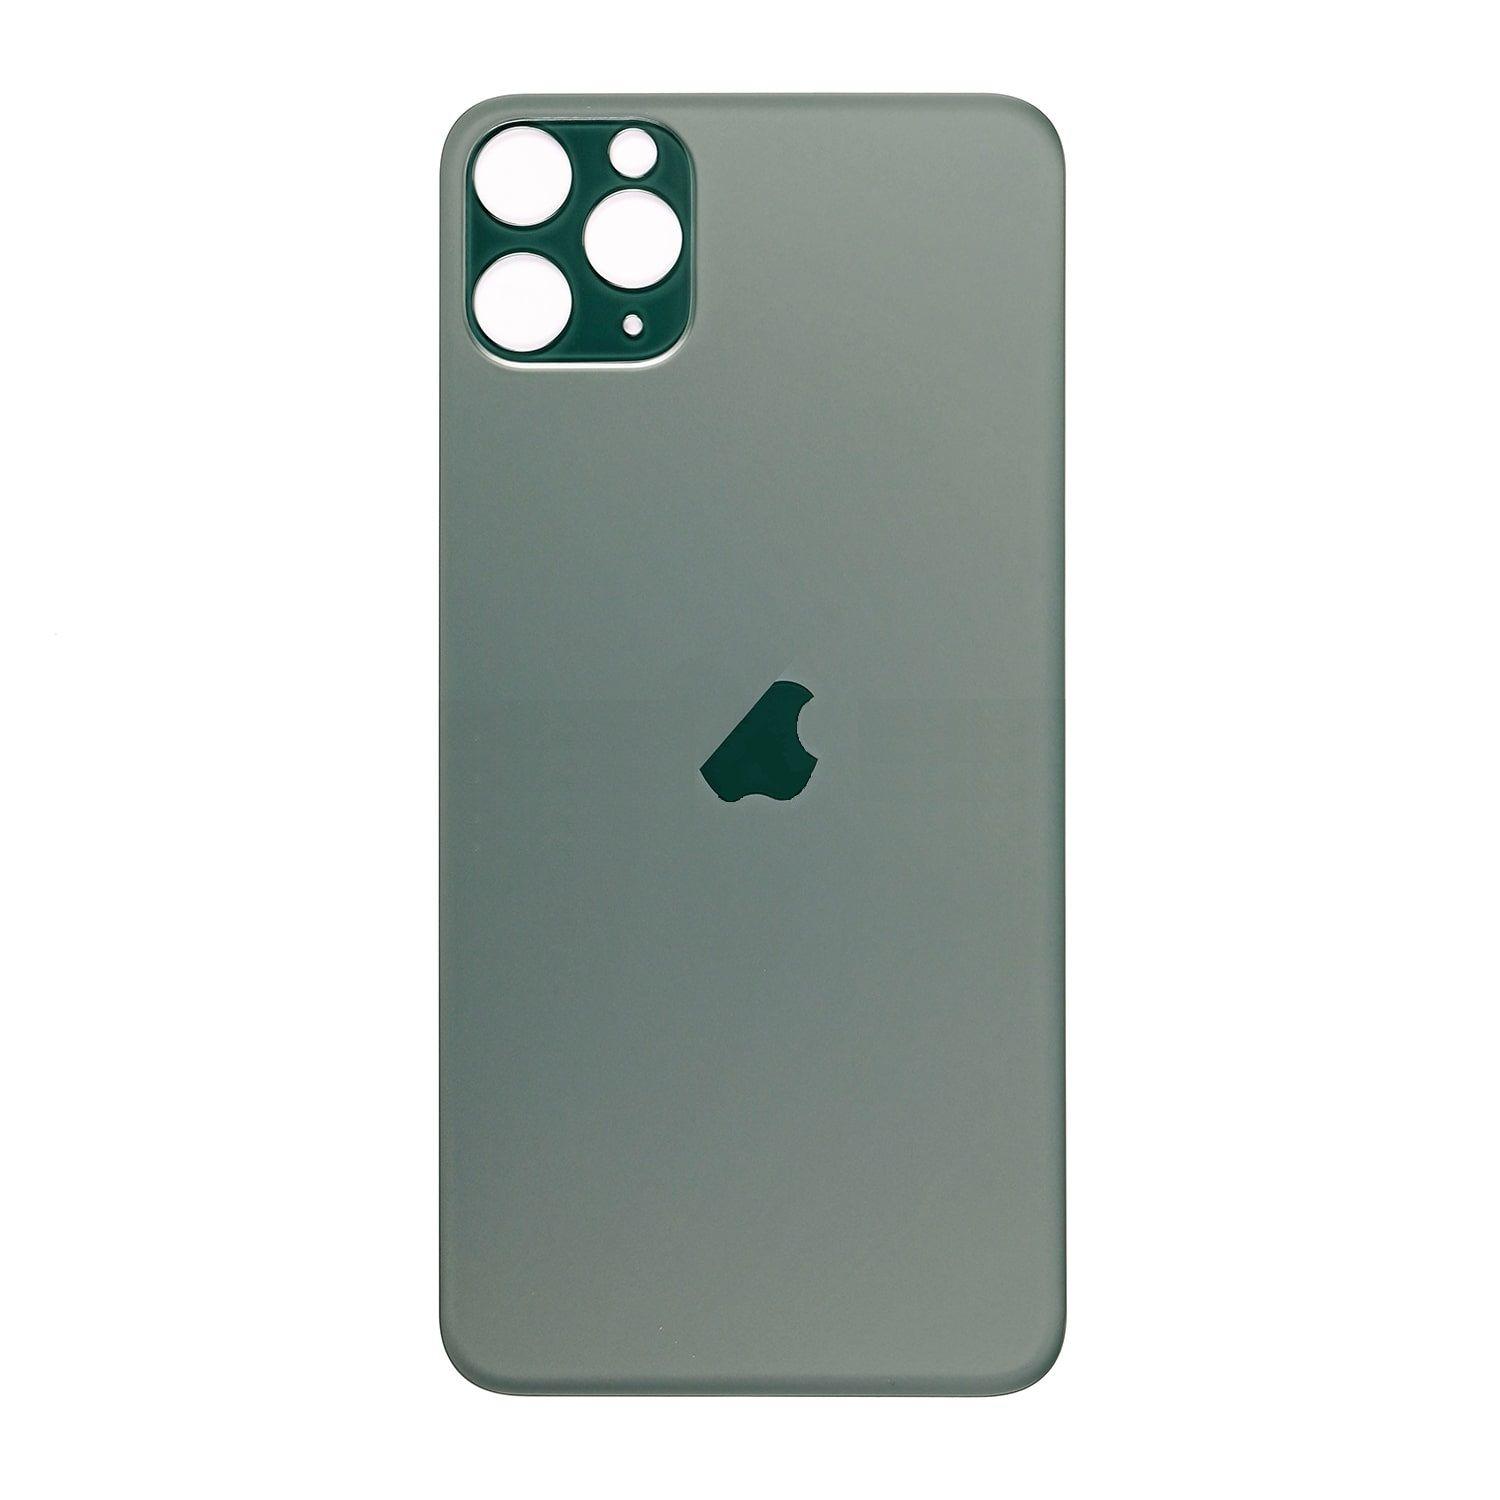 Kryt baterie iPhone 11 Pro Max zelený bez sklíčka kamery